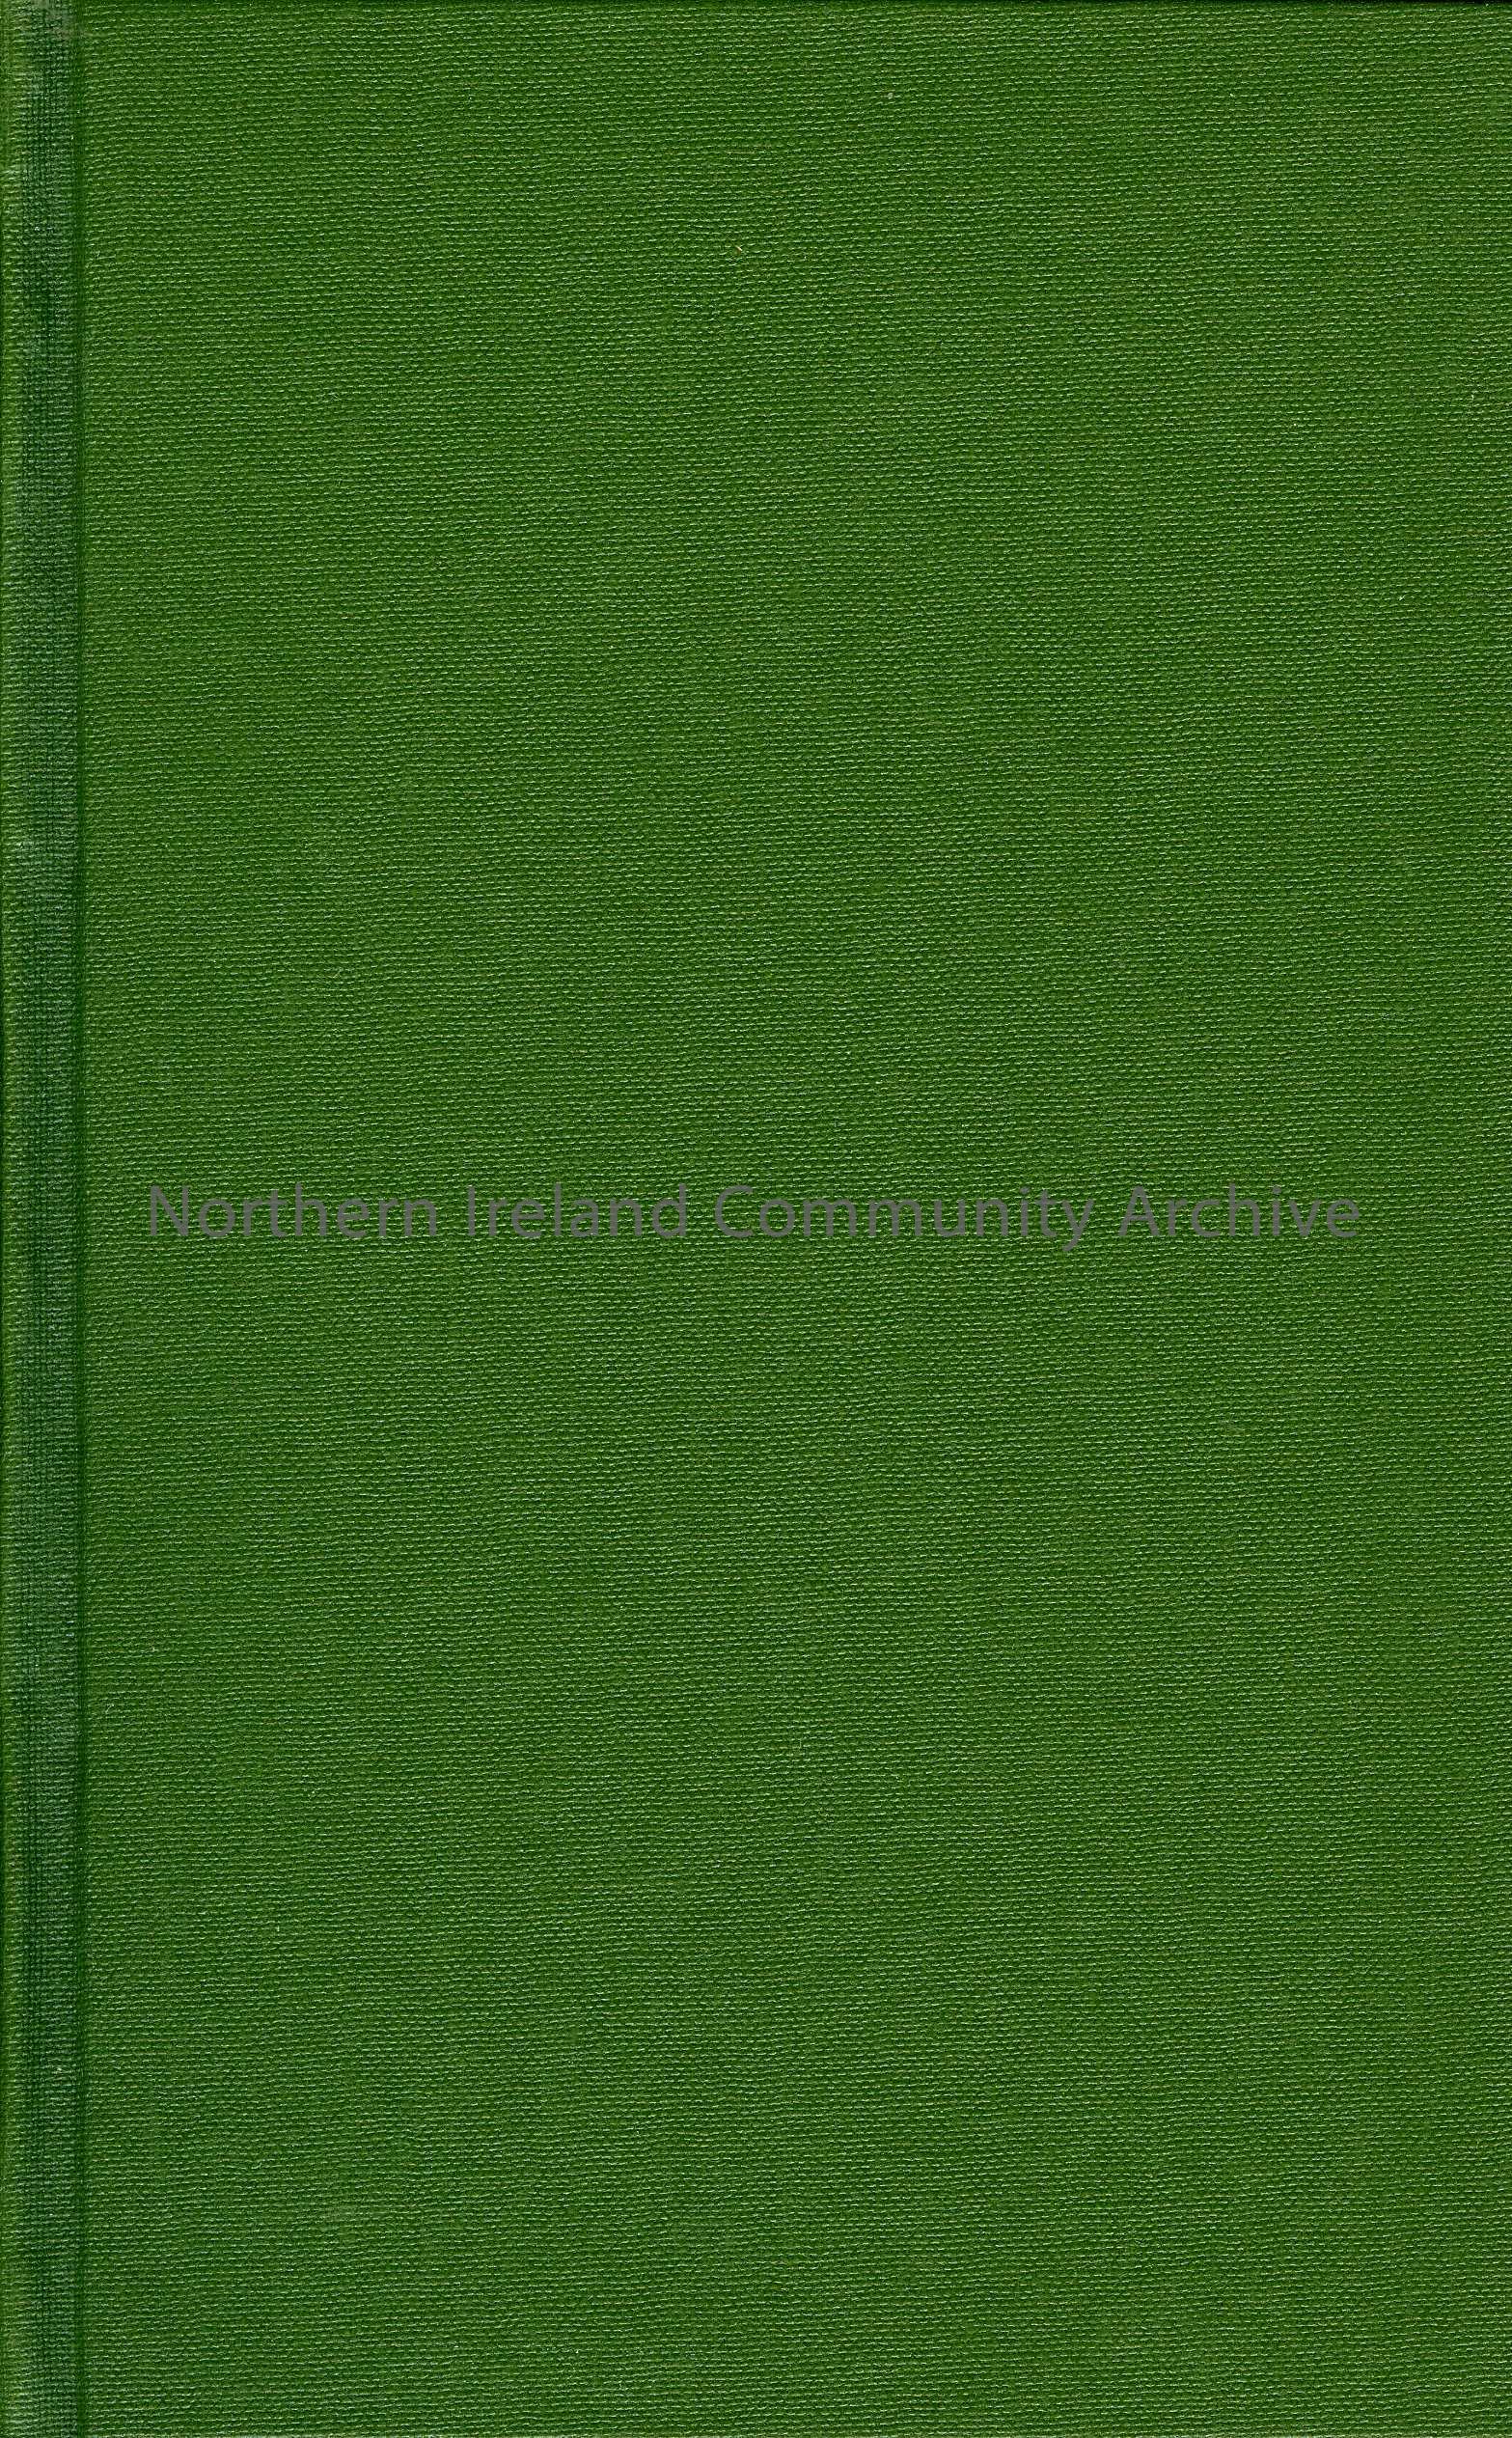 book titled, Garavagh Parish Souvenir, 1928. (5920)